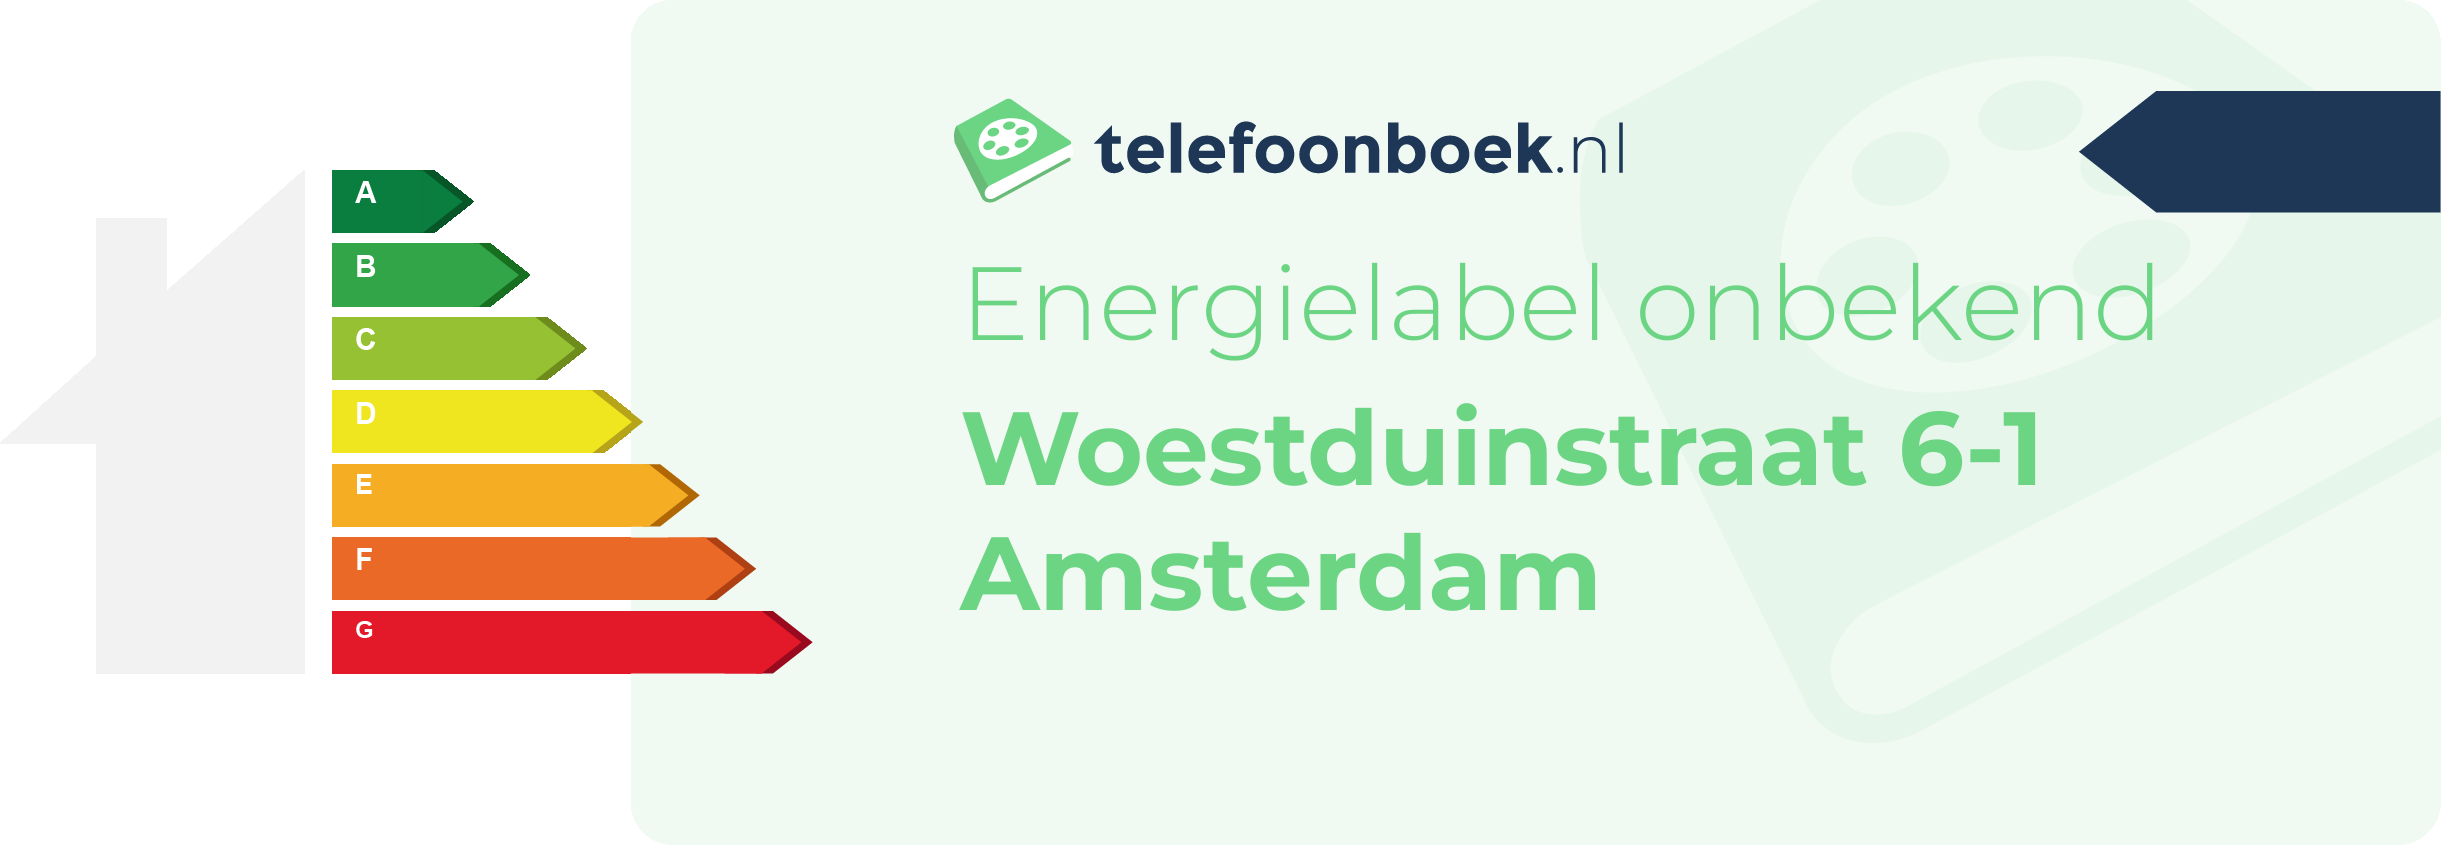 Energielabel Woestduinstraat 6-1 Amsterdam